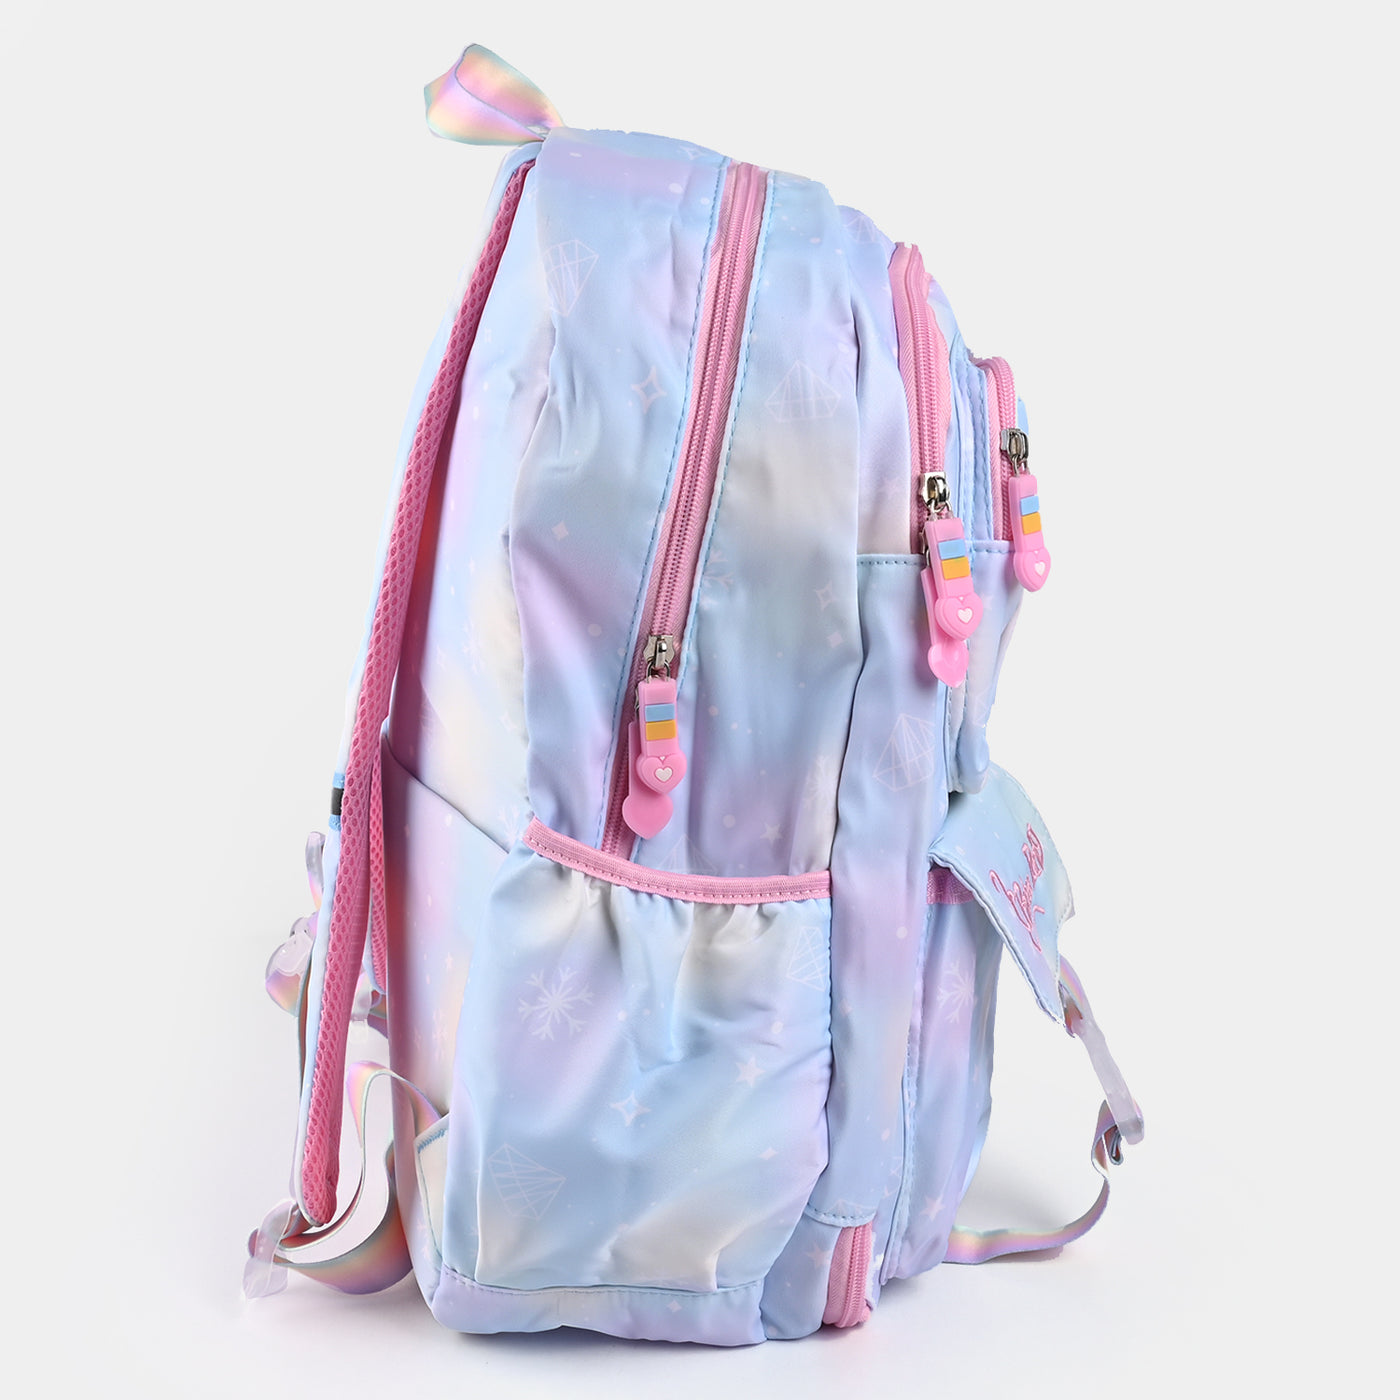 Cute kids Backpack/School Bag